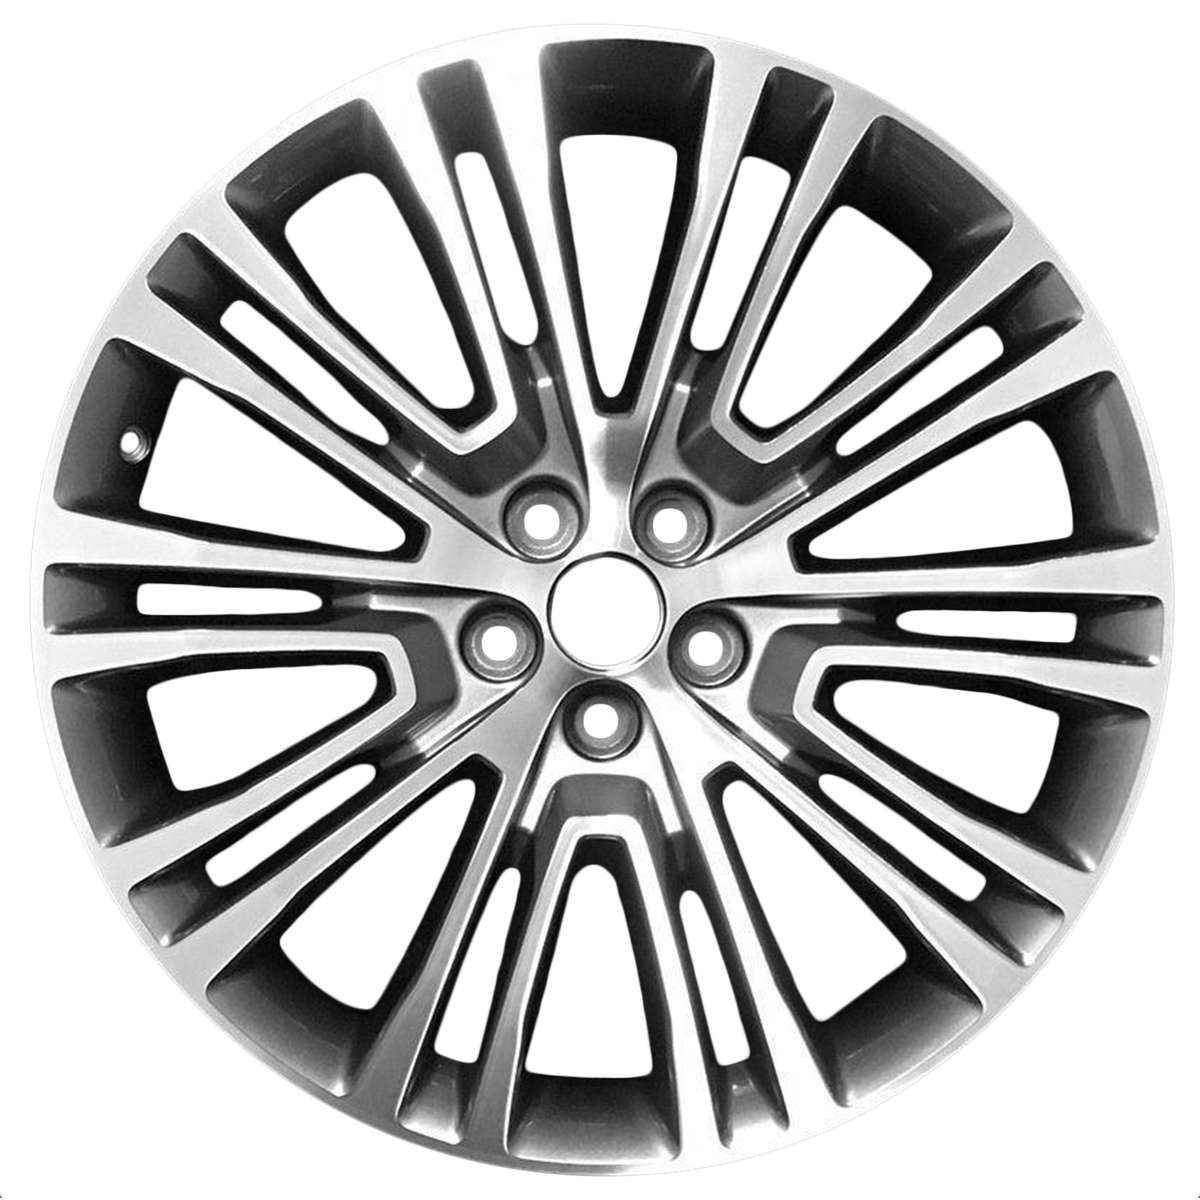 2018 Lincoln MKX 20" OEM Wheel Rim W10075MC